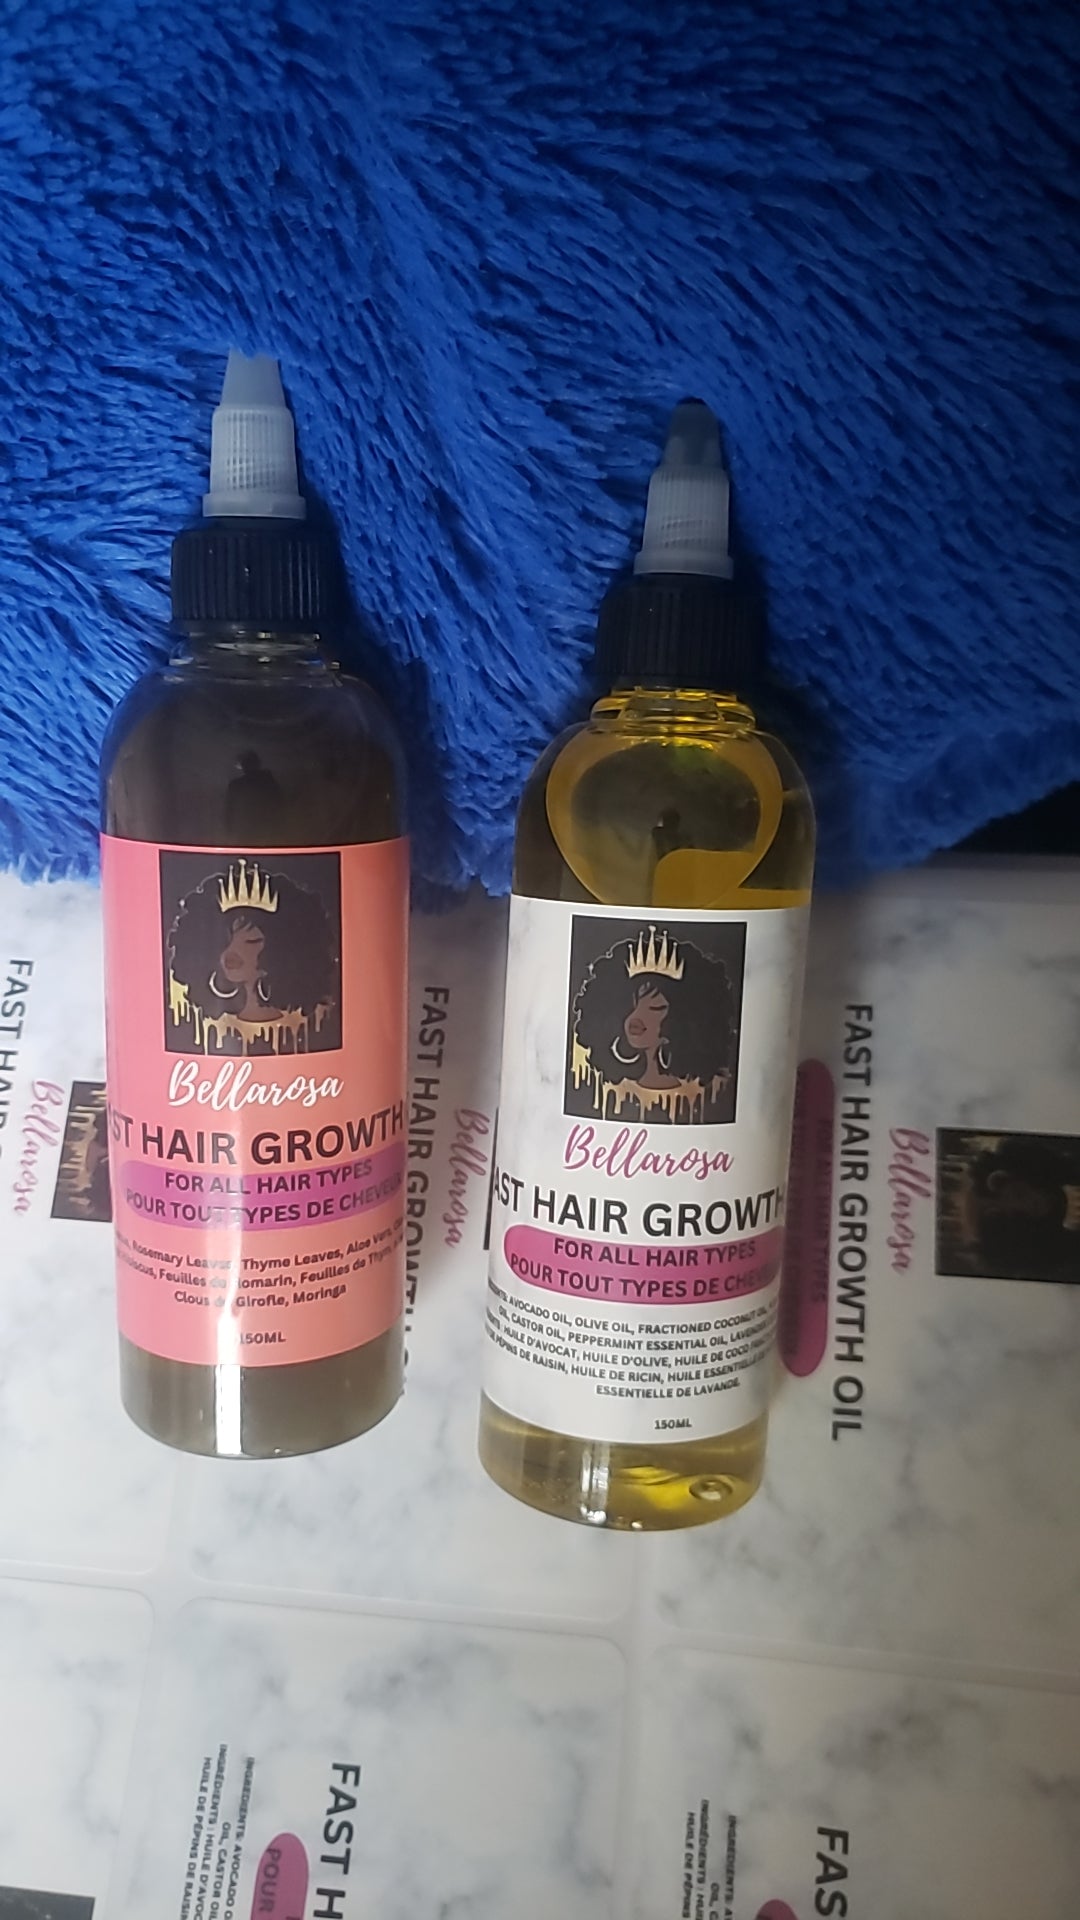 Fast Hair Growth Oil (Huile pour la croissance rapide des cheveux)